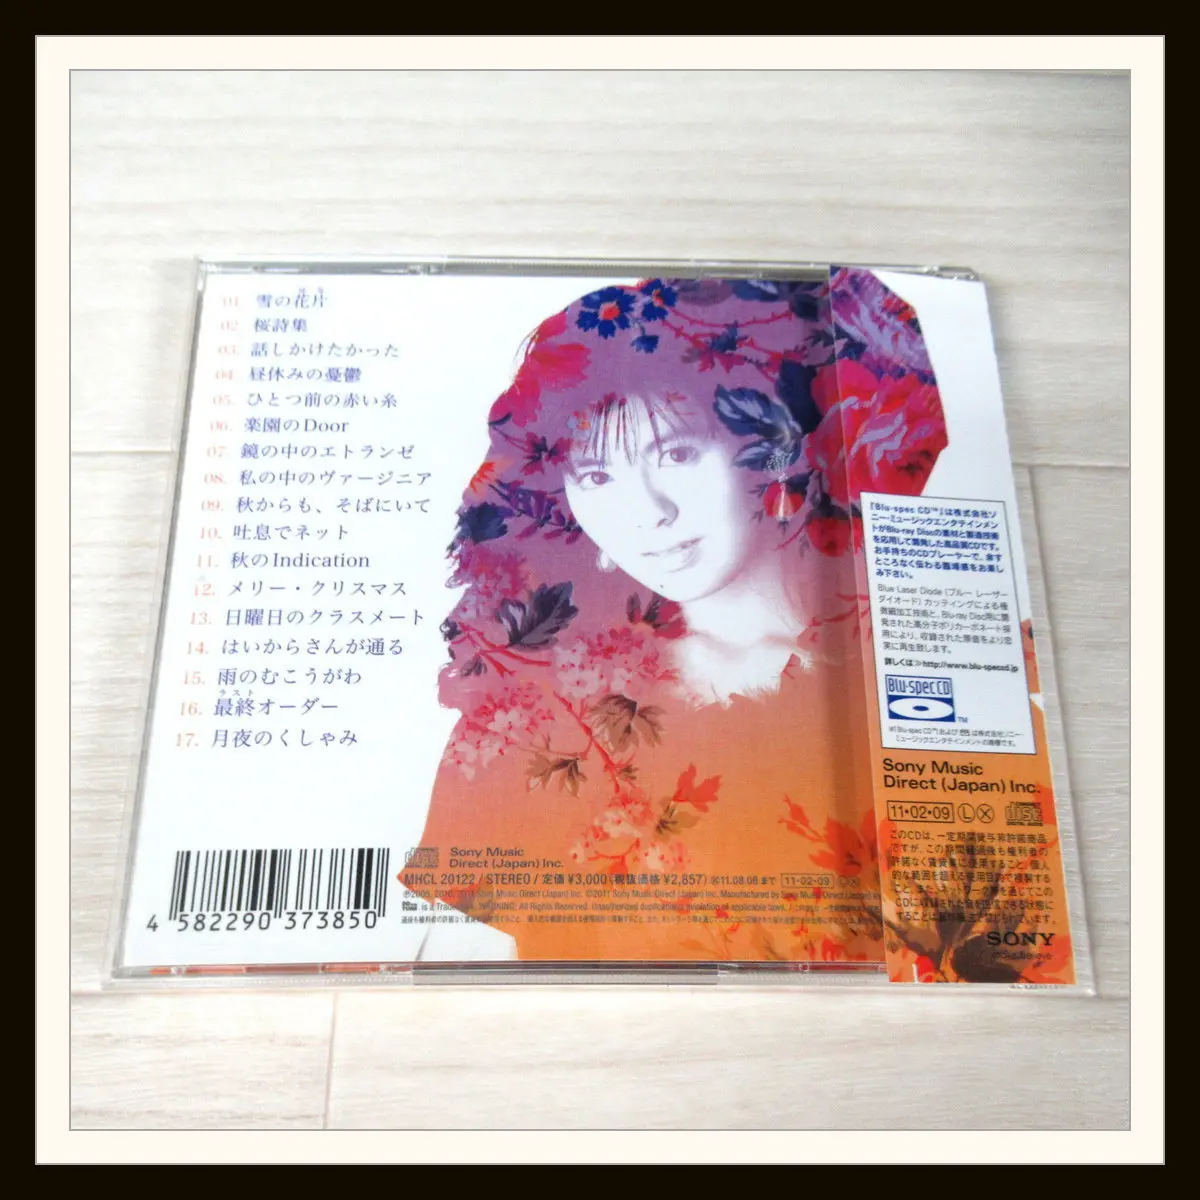 南野陽子 Blu-spec CD ReFined-Songs Collection NANNO 25th Anniversary